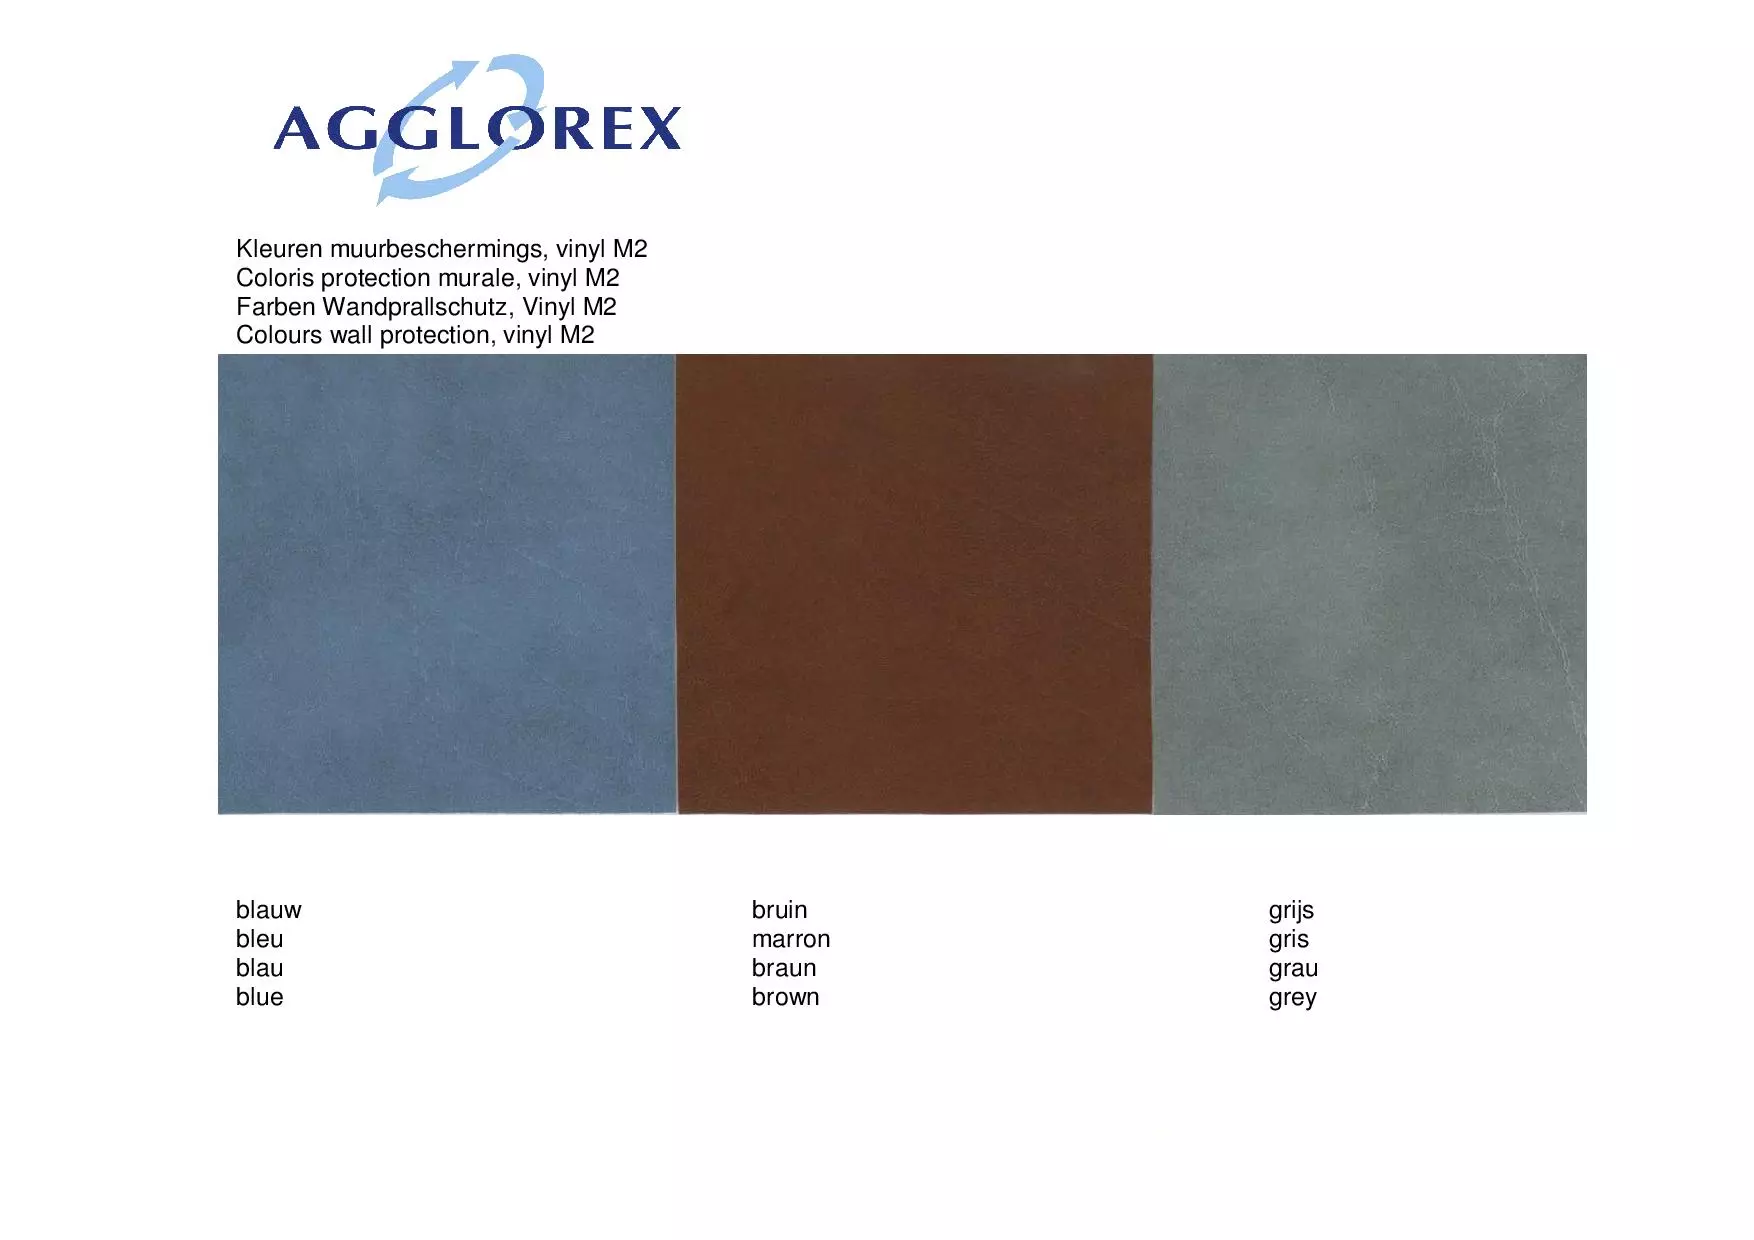 Agglorex muurbescherming vinyl | 170 kg/m3 | 2,5 cm